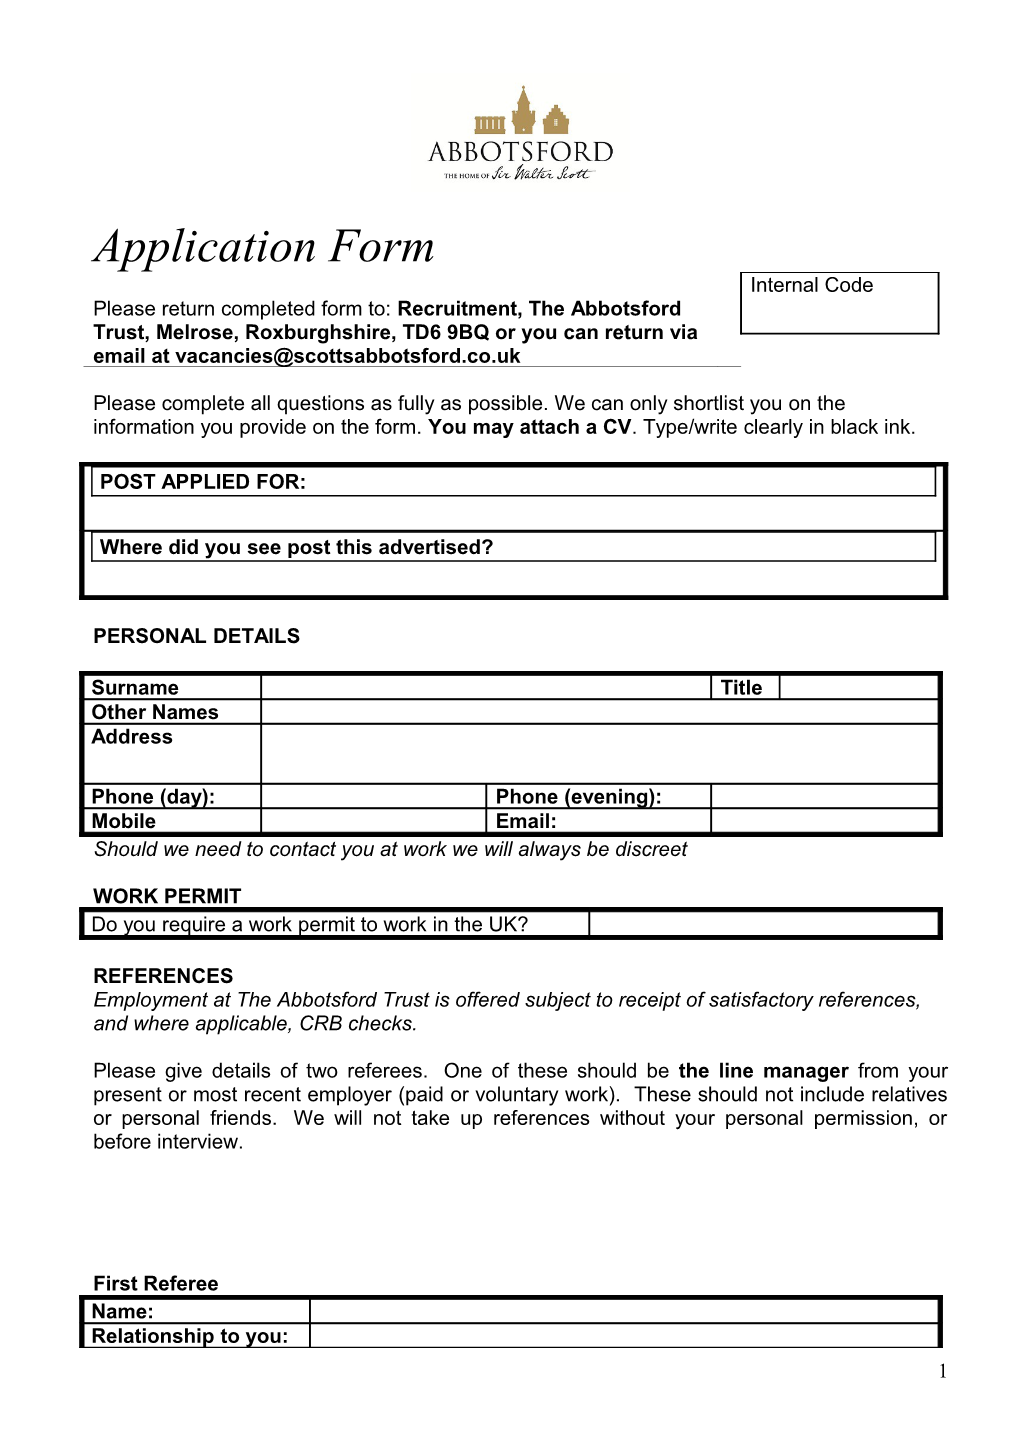 NCVO Application Form